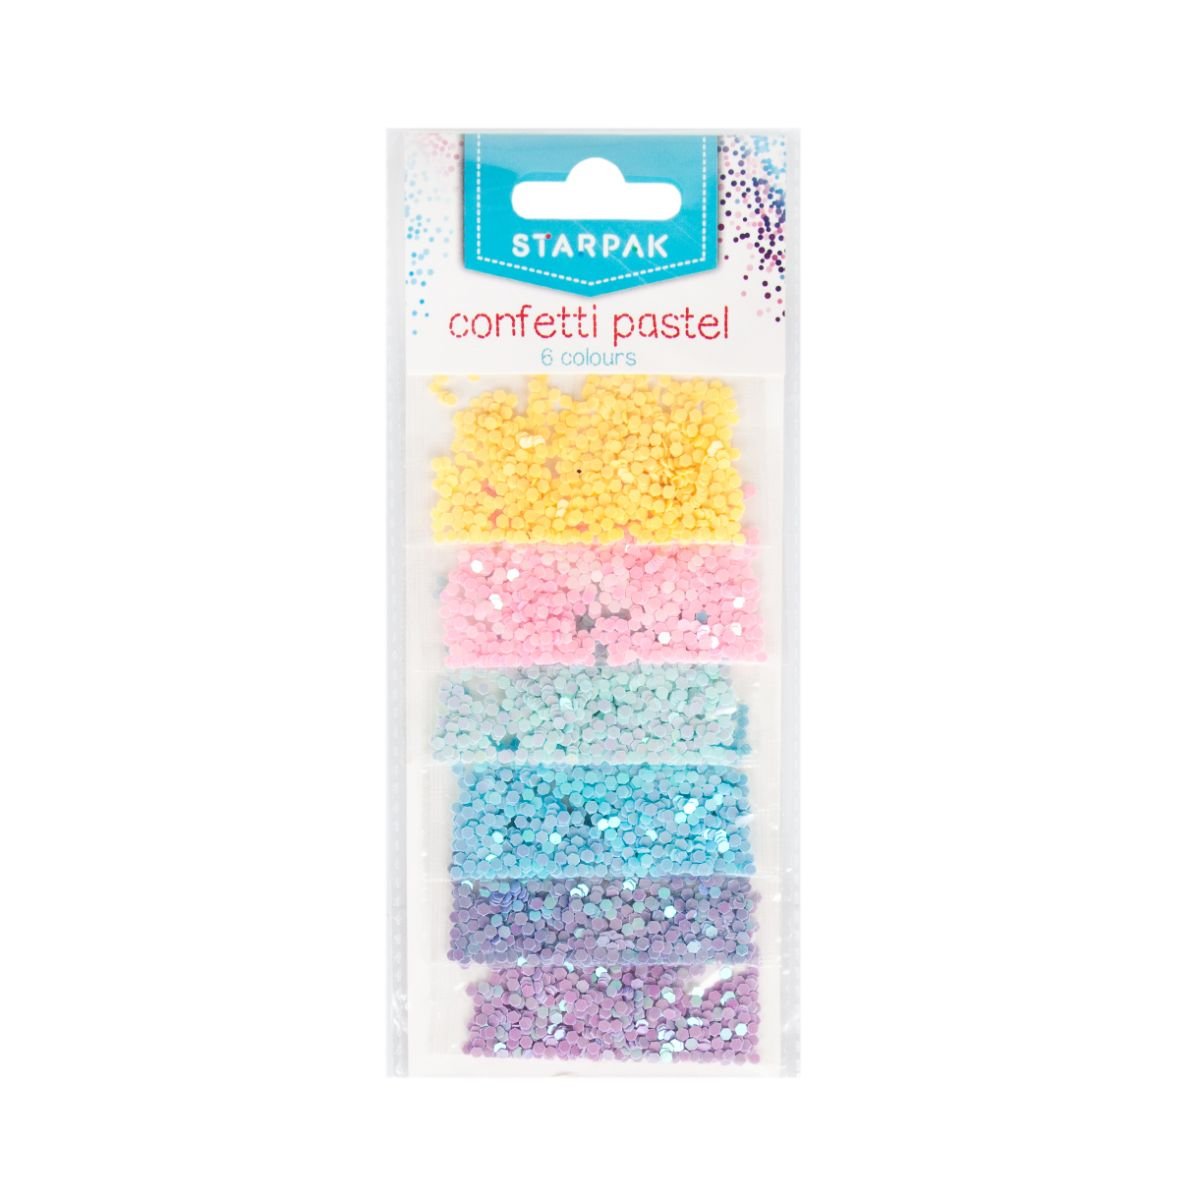 Poze Confetti, Starpak, 6 culori pastel